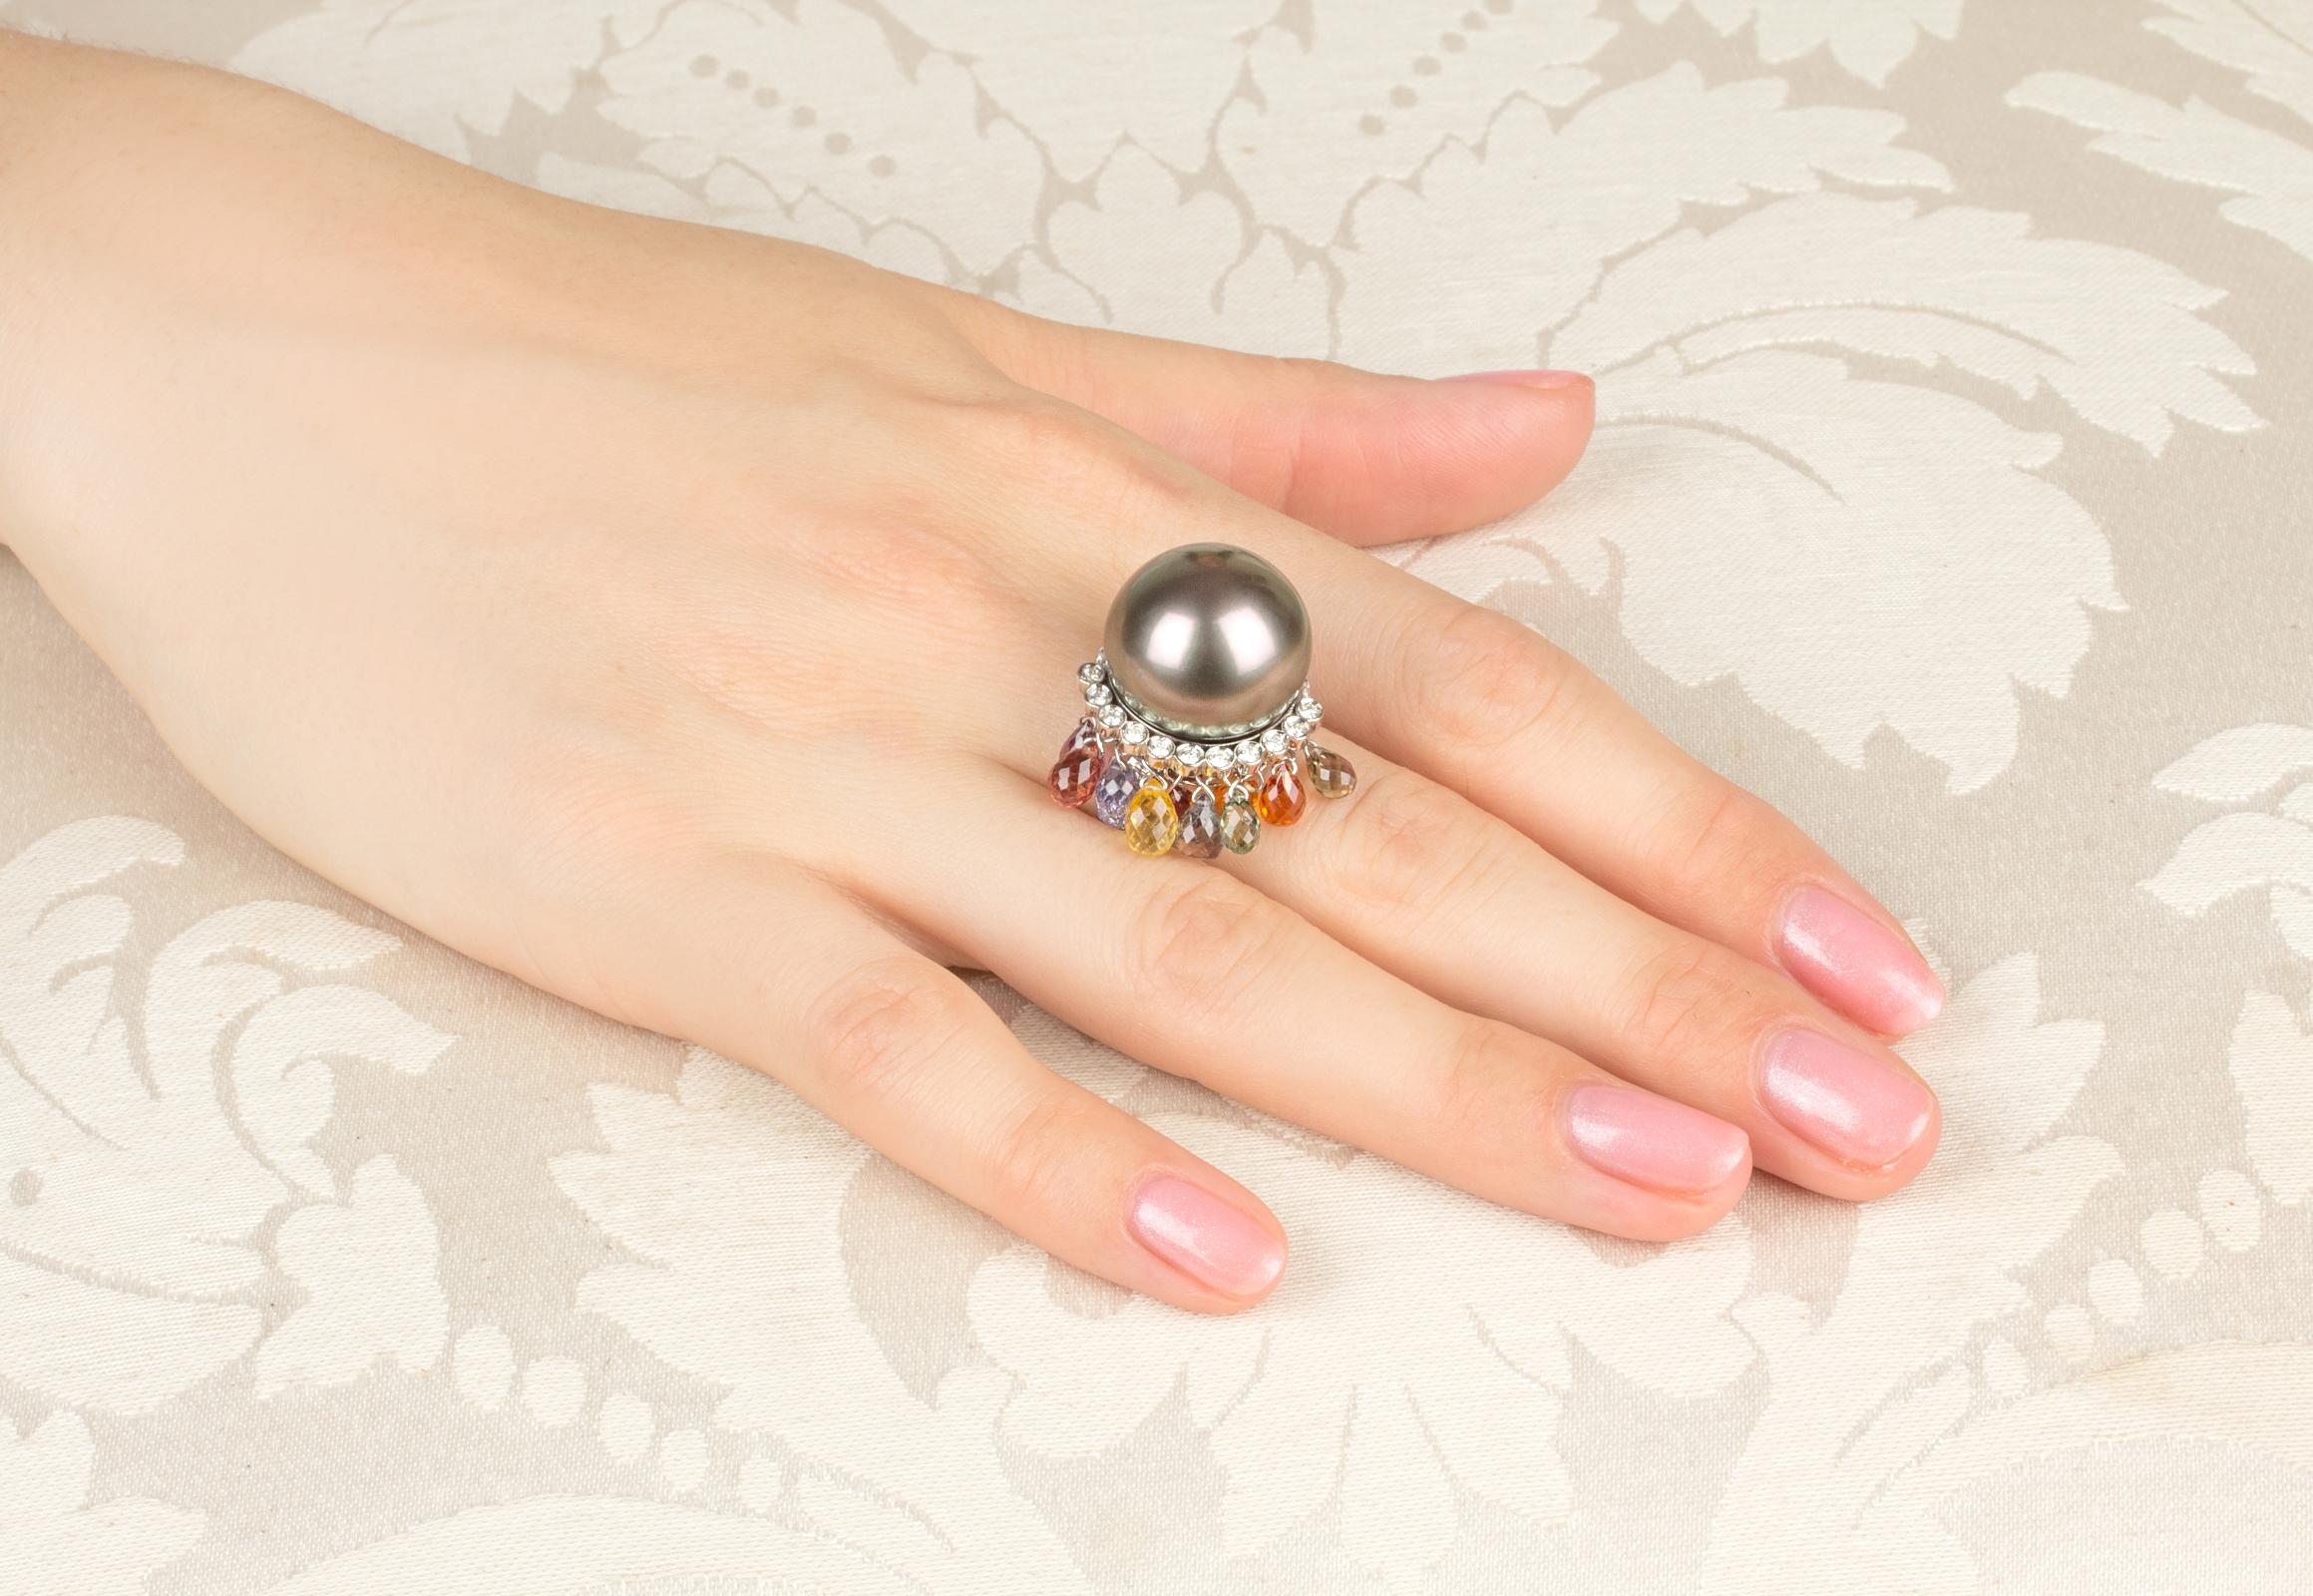 Dieser Ring aus Tahiti-Perlen und Diamanten zeichnet sich durch eine besonders große und attraktive Perle von 17,5/18 mm Durchmesser aus. Die Perle ist naturbelassen. Er hat ein feines Perlmutt und seine natürliche Farbe und sein Glanz wurden in